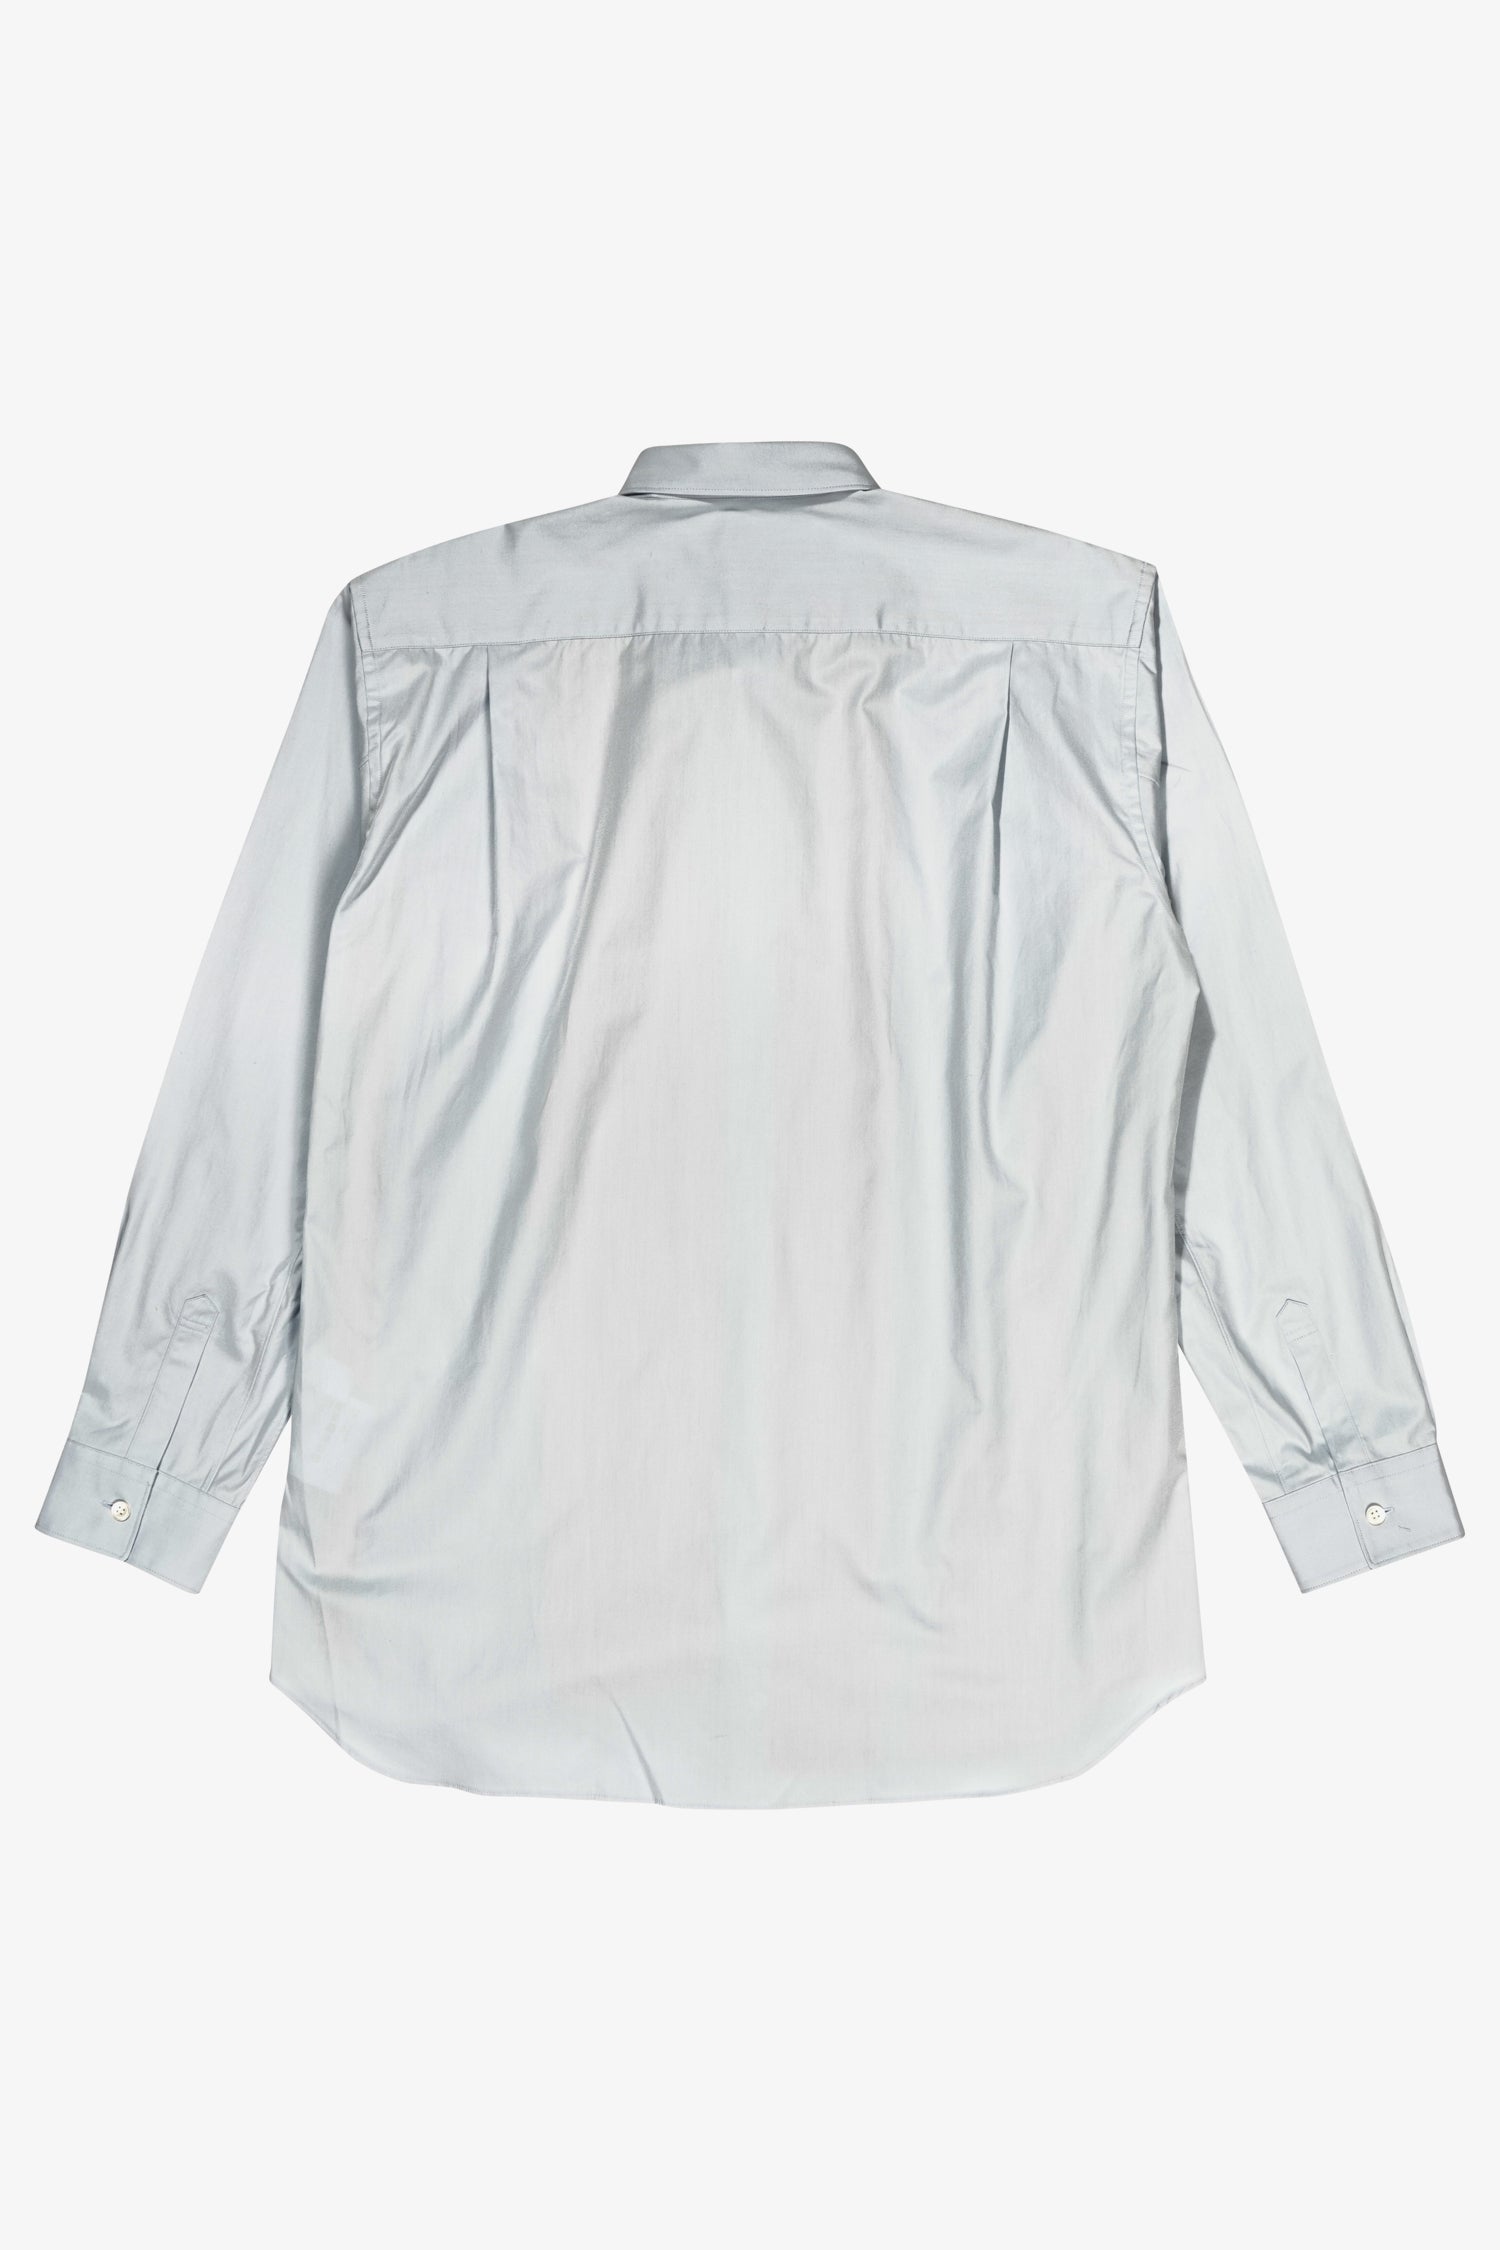 Selectshop FRAME - COMME DES GARÇONS SHIRT Multi-Color Oxford Shirt Shirt Dubai